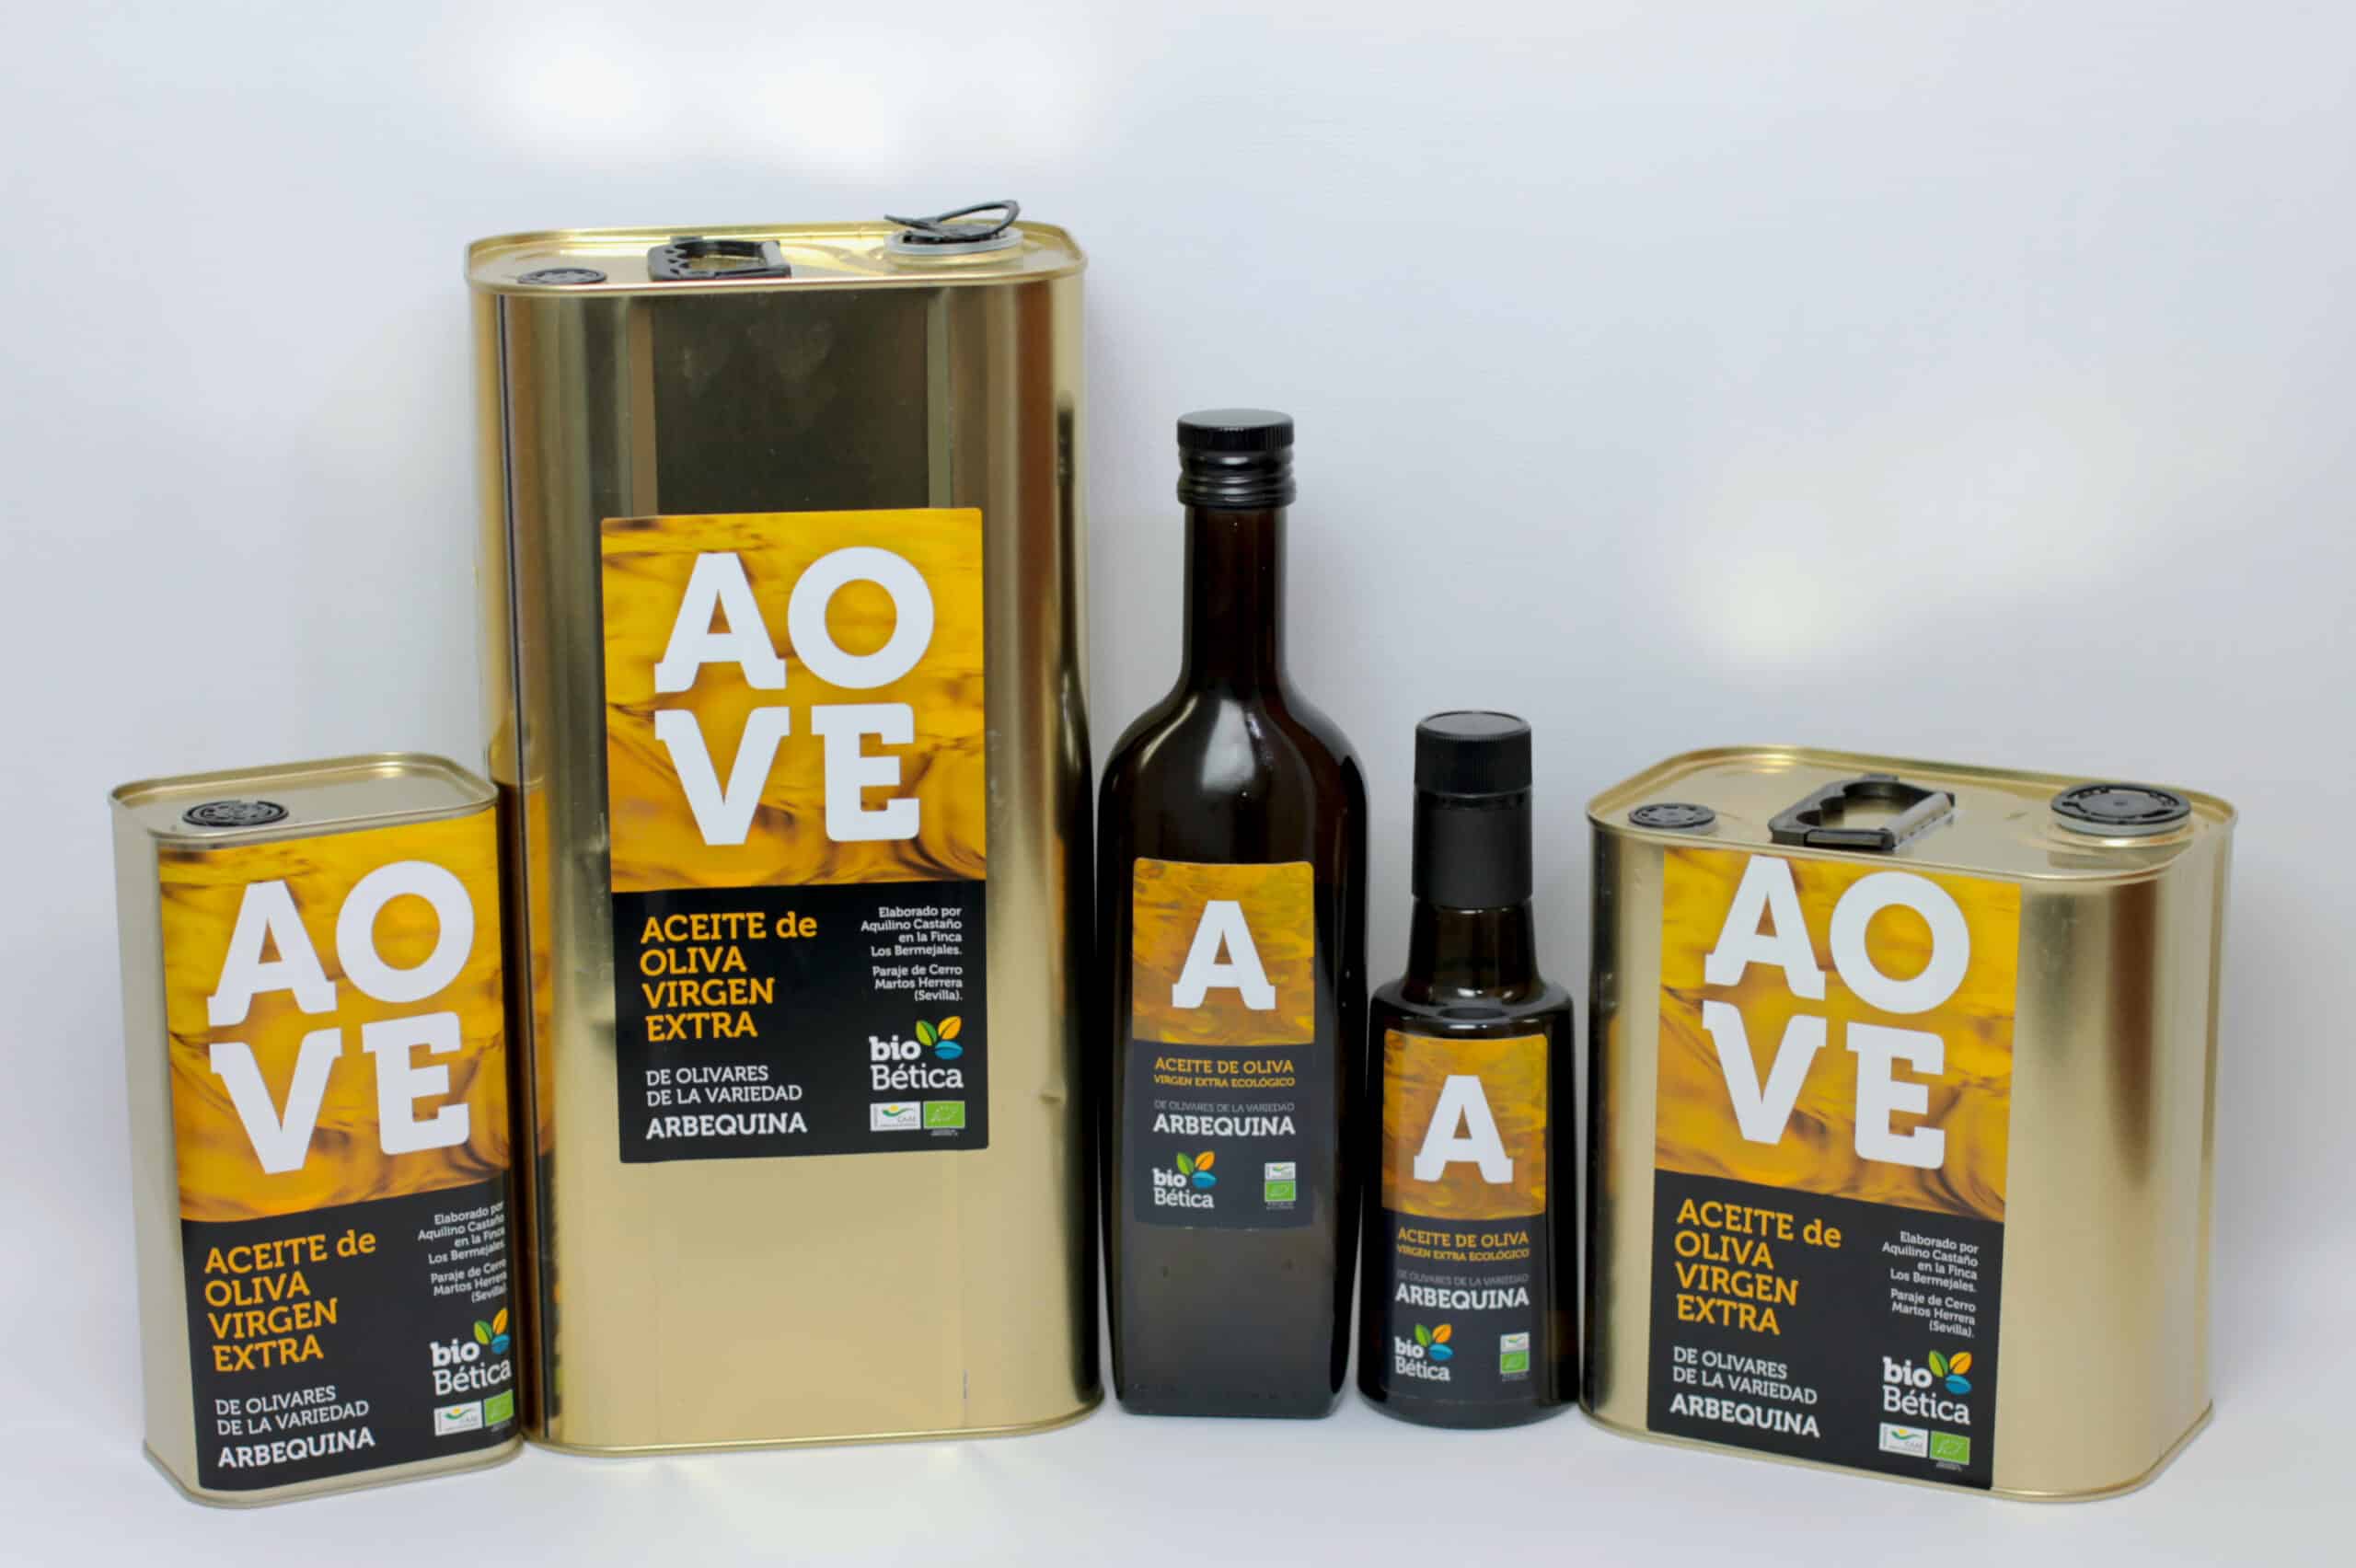 AOVE-aceite-de-oliva-virgen-extra-oil-bio-betica-biobetica-arbequino-natural-eco-ecologico